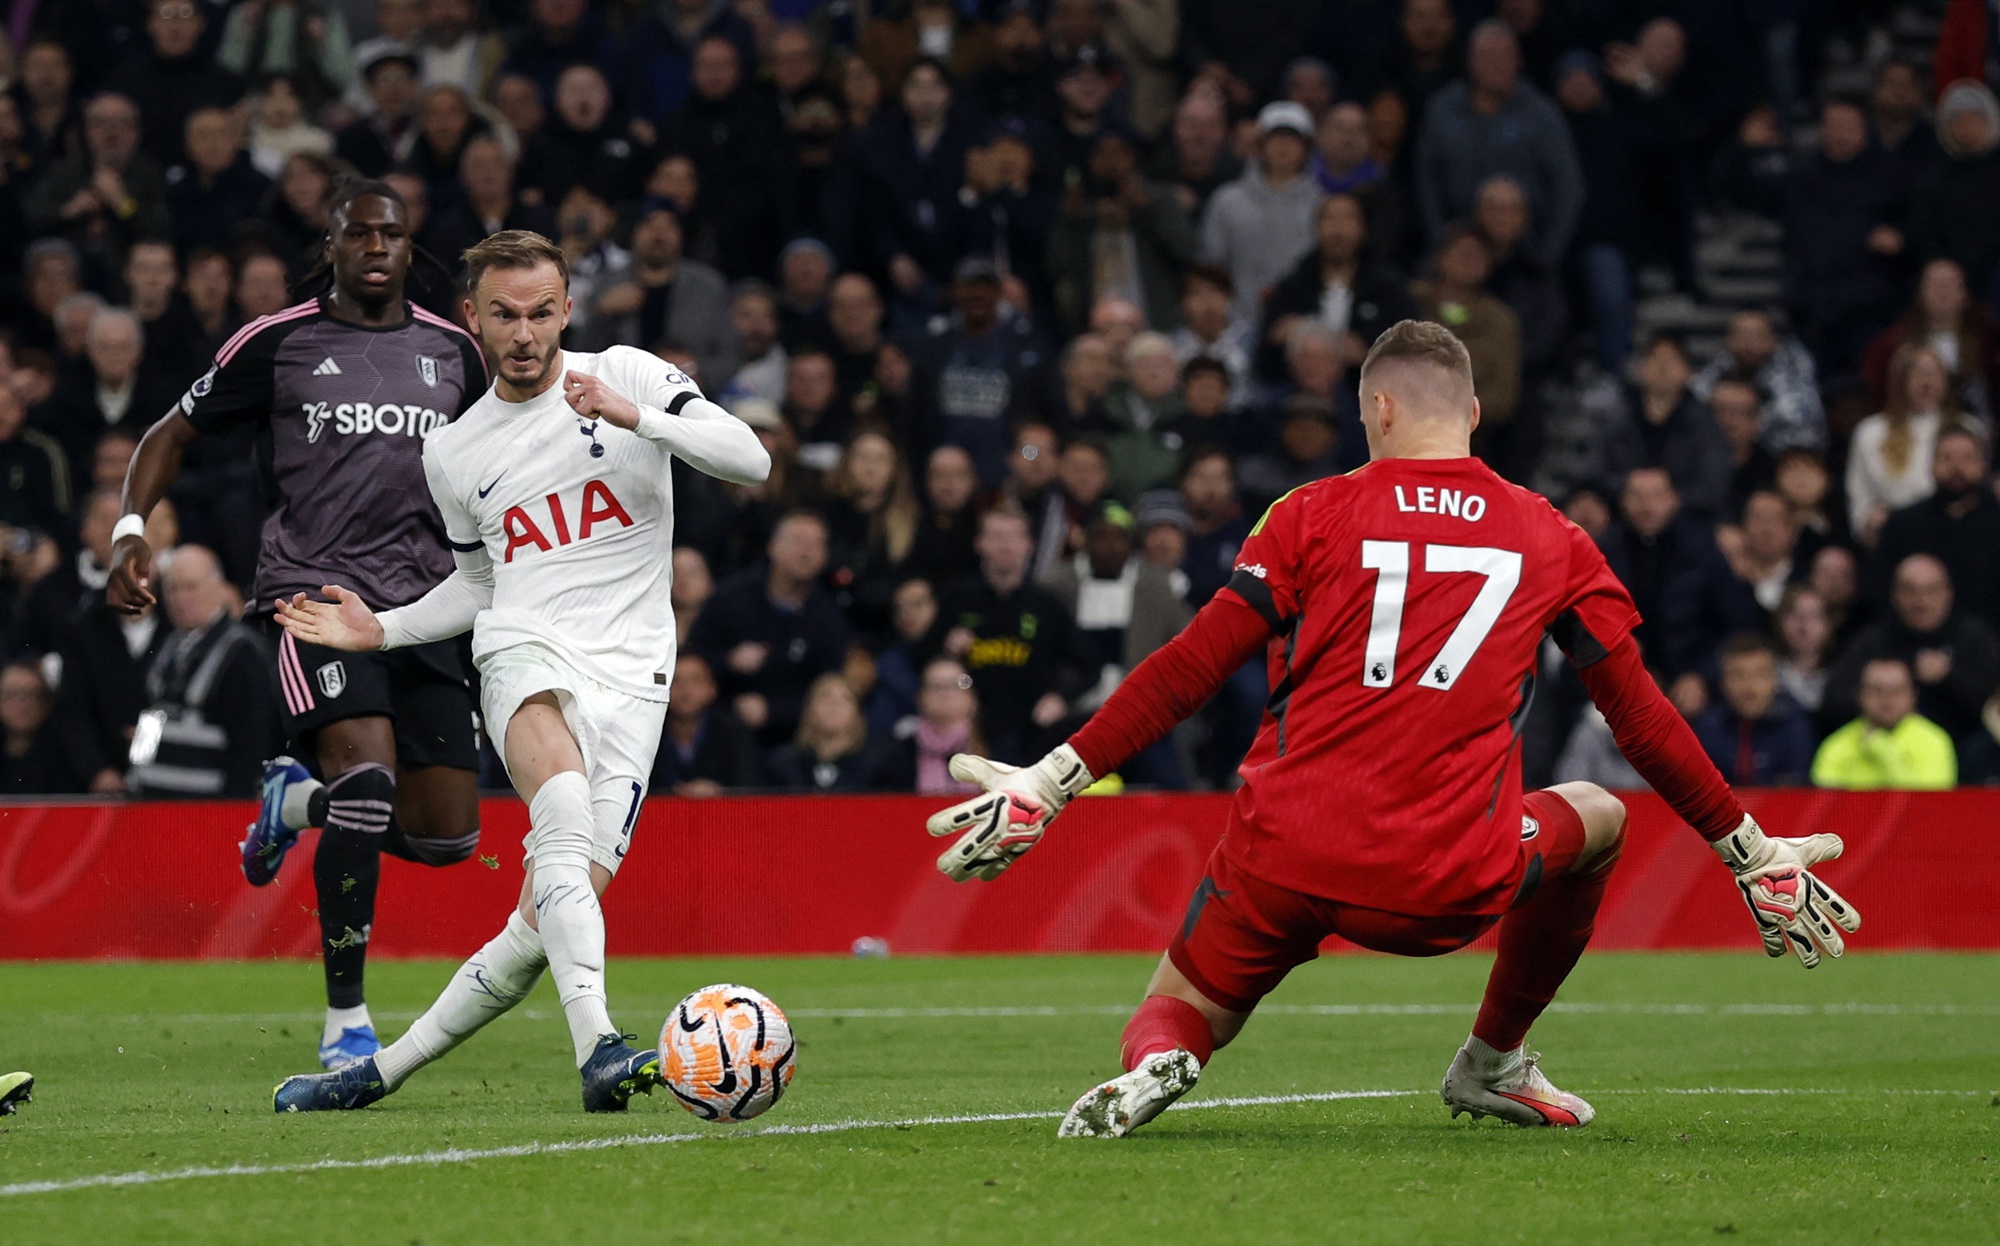 Sát thủ xứ Hàn lập công, Tottenham lên đỉnh bảng Ngoại hạng - Ảnh 6.